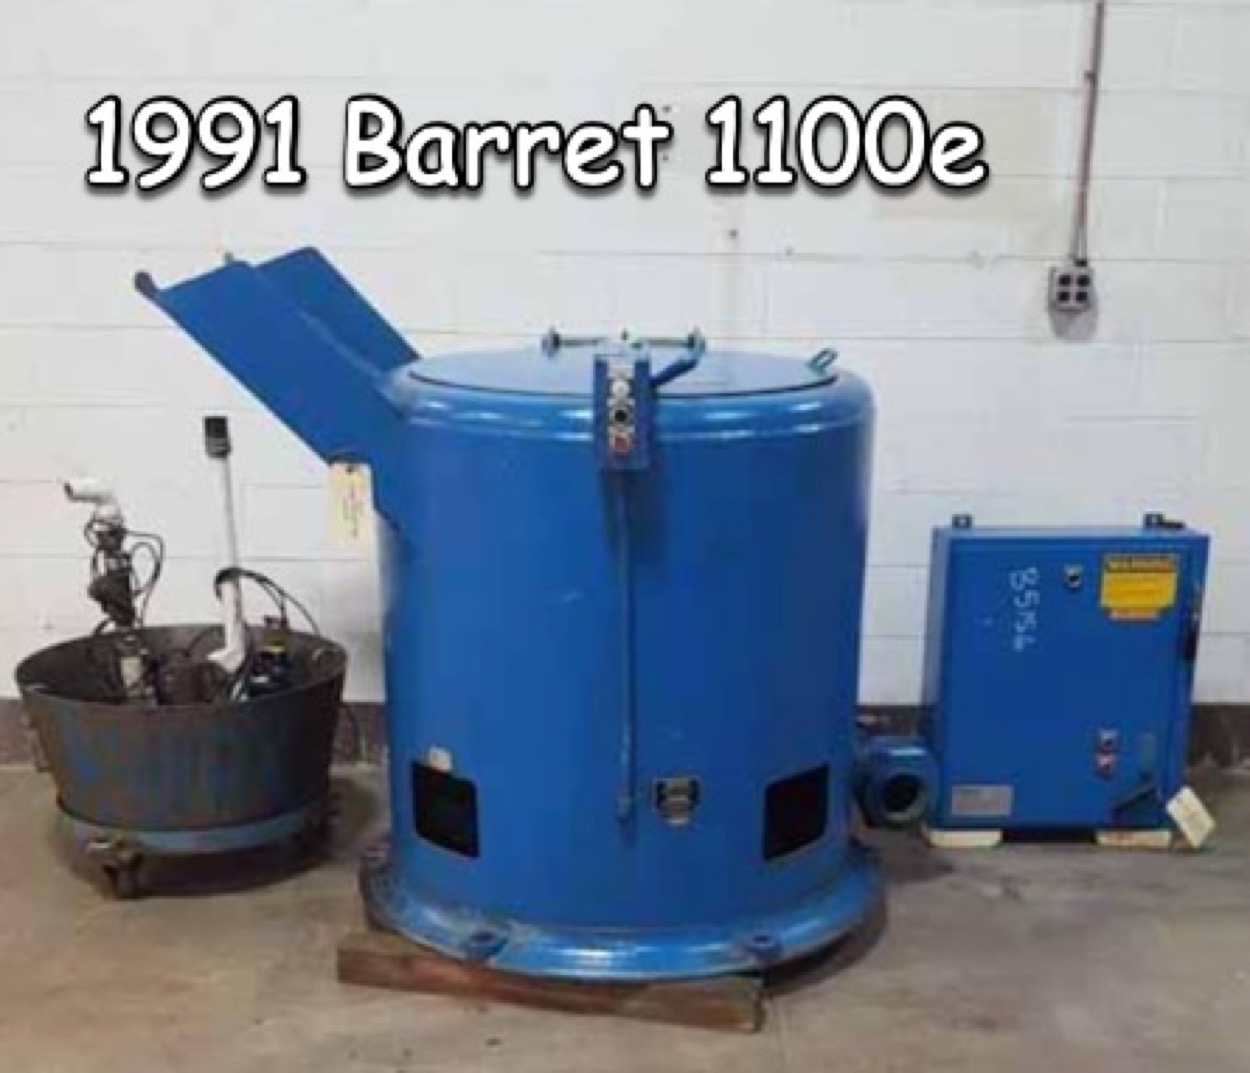 Barrett 1100e 1991